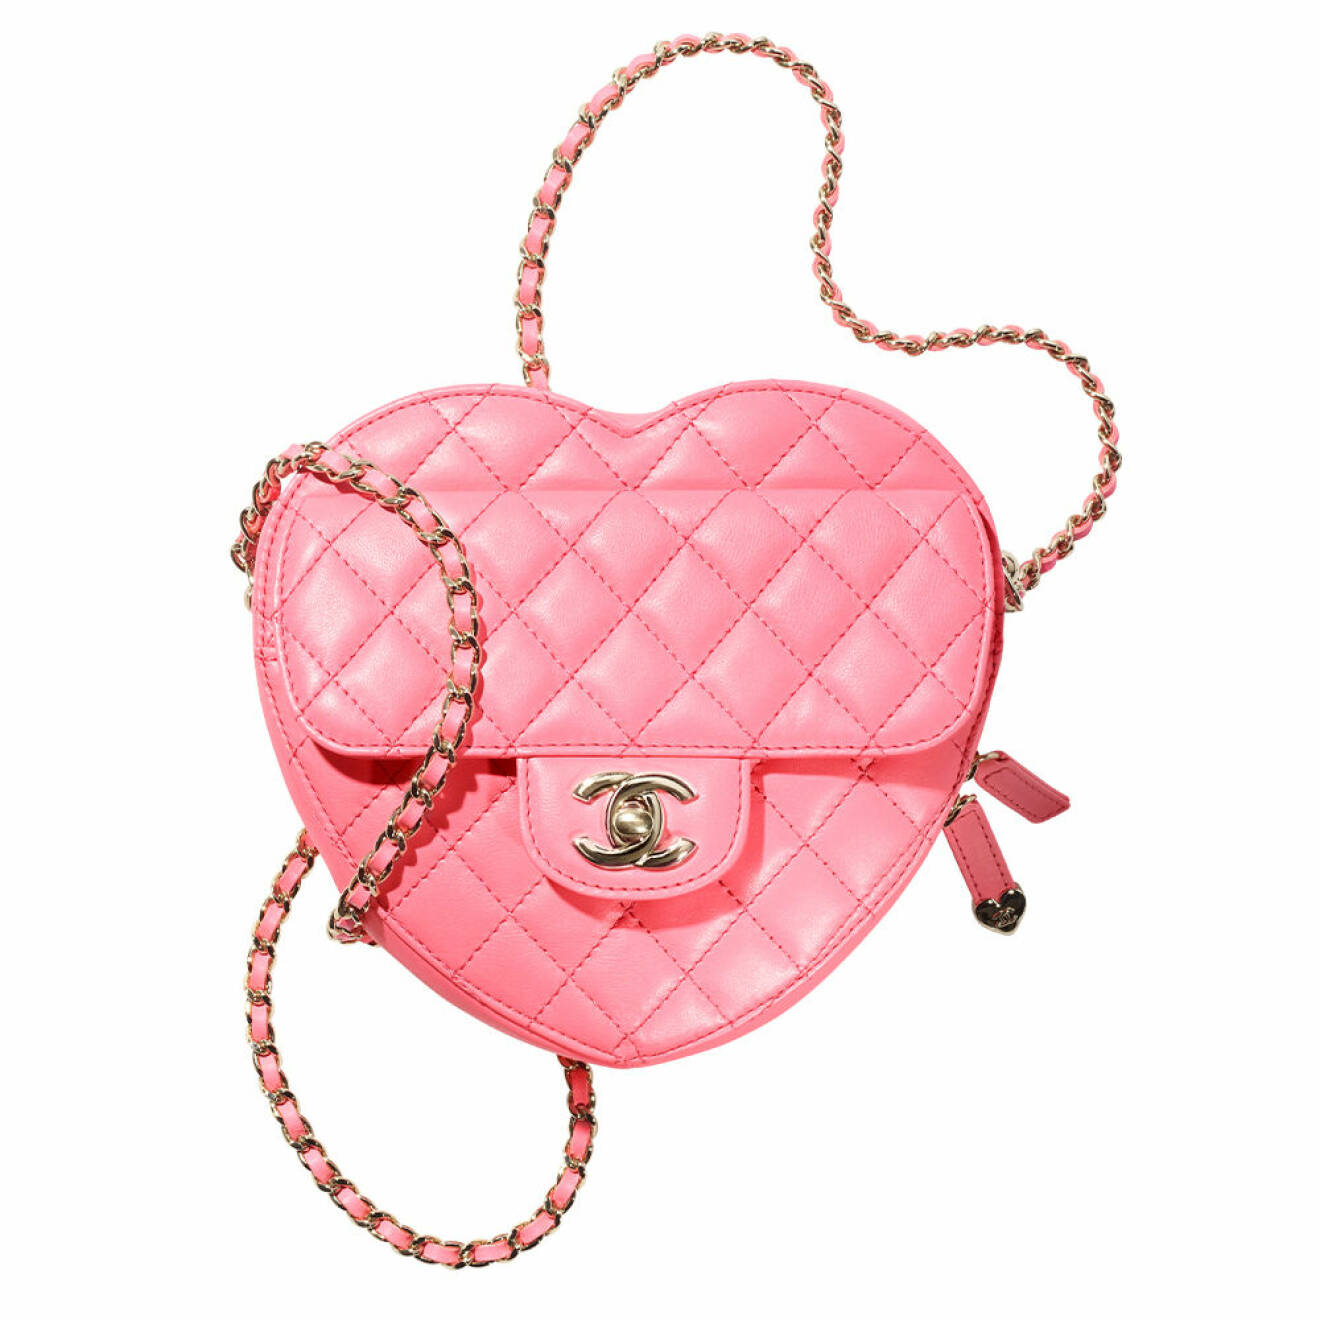 Väska, 51 000  kr, Chanel.